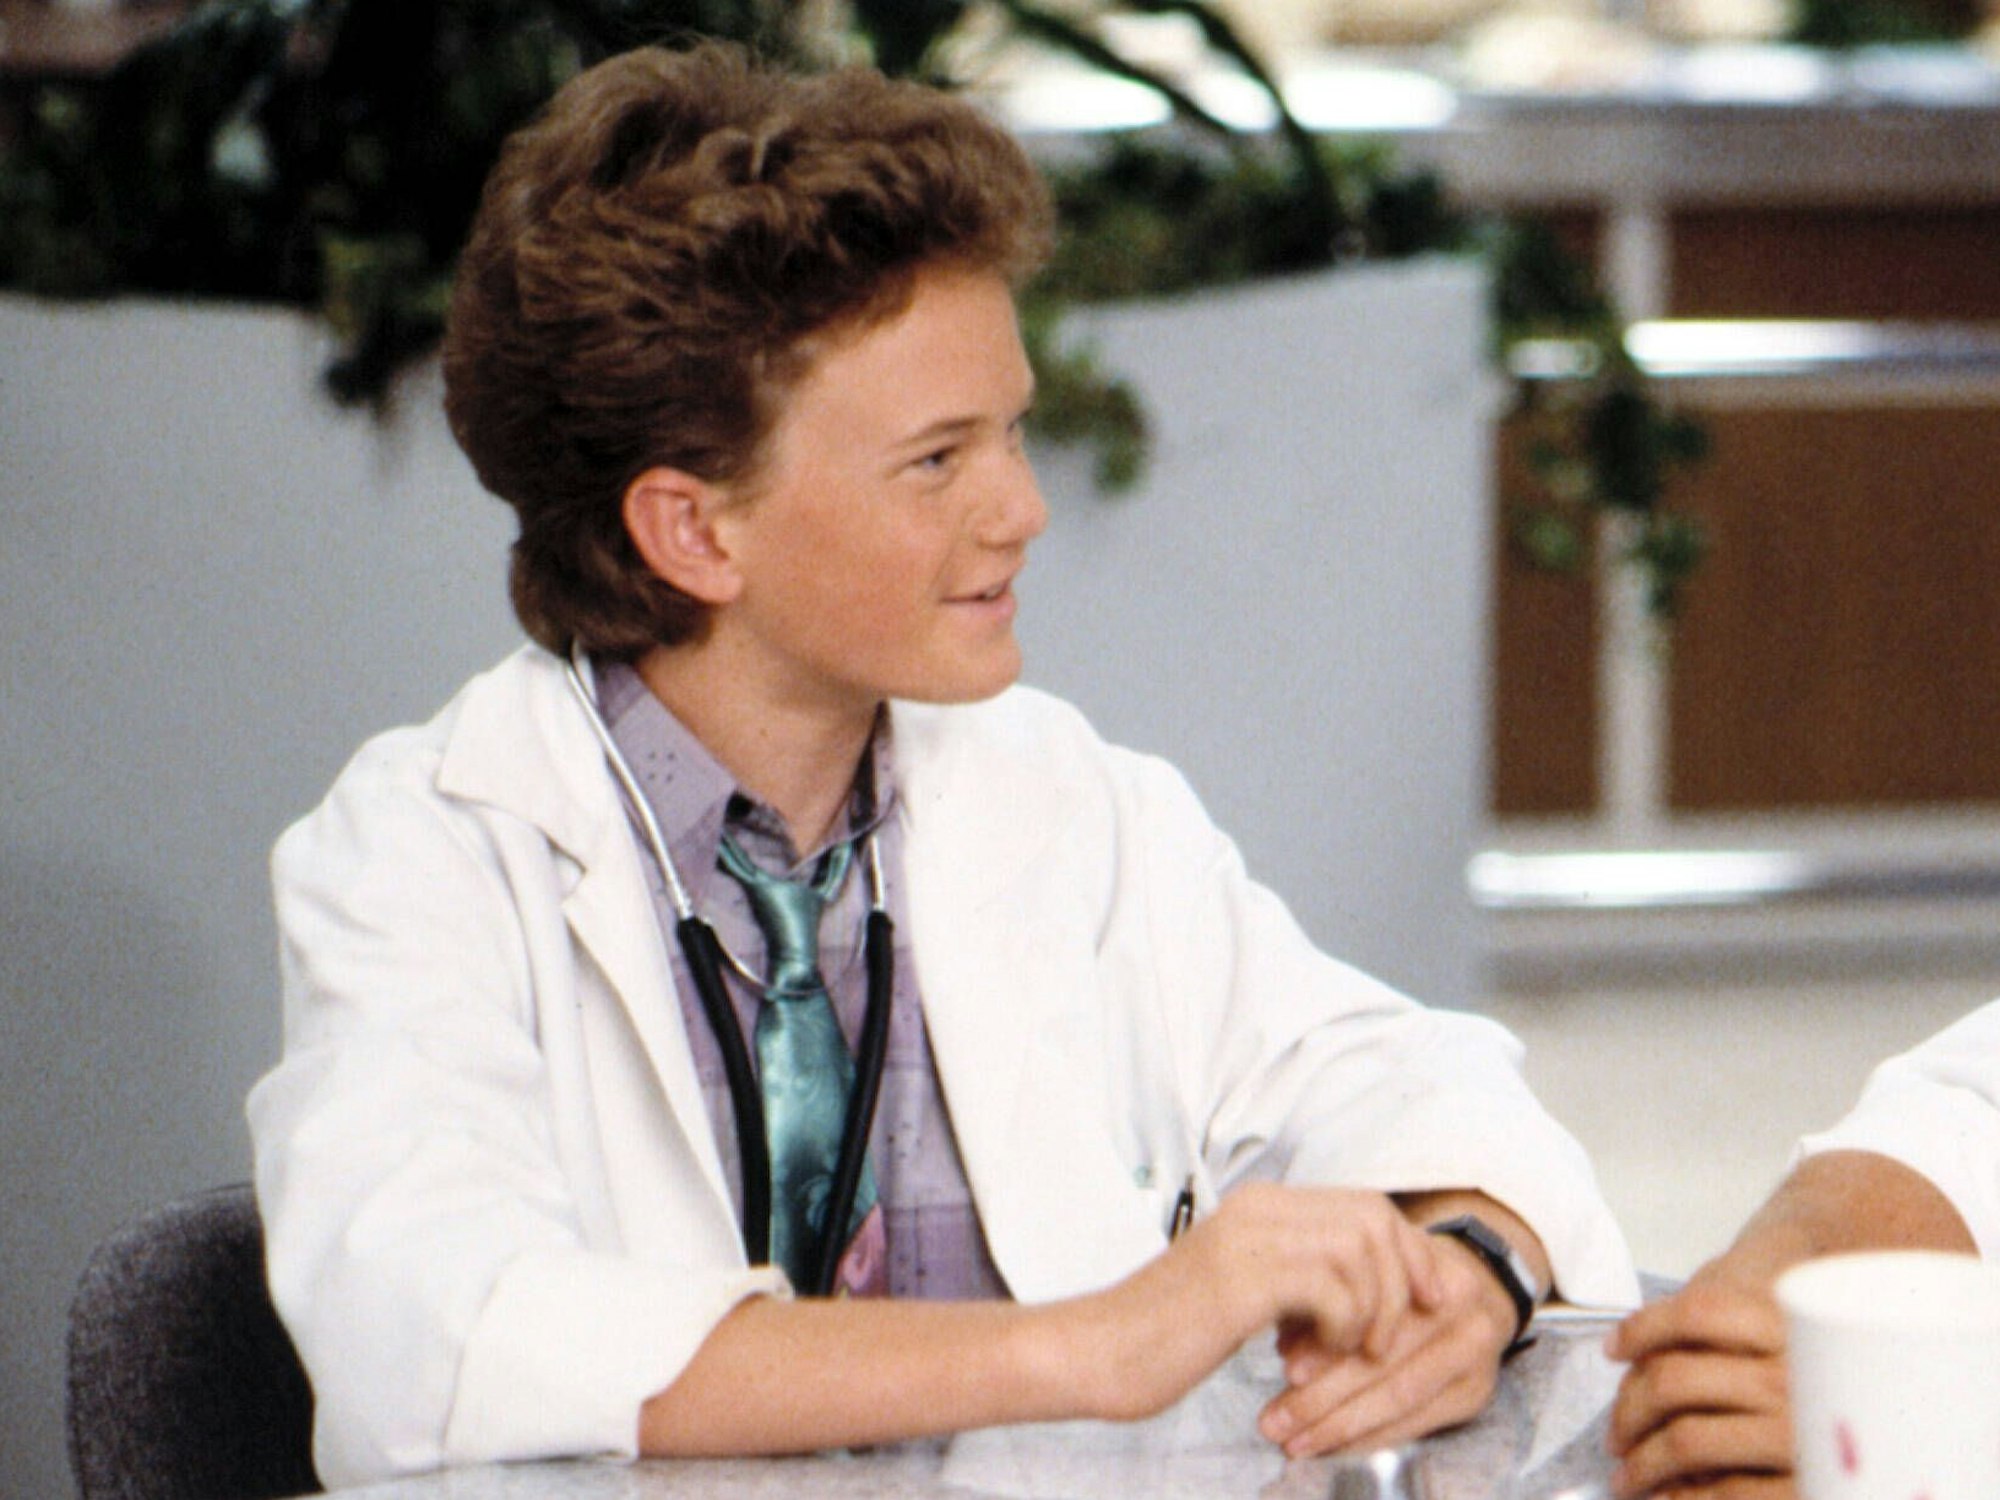 Der Kinderdarsteller Neil Patrick Harris sitzt in seiner Rolle als Dr. Douglas „Doogie“ Howser mit Arztkittel einer anderen Person gegenüber.